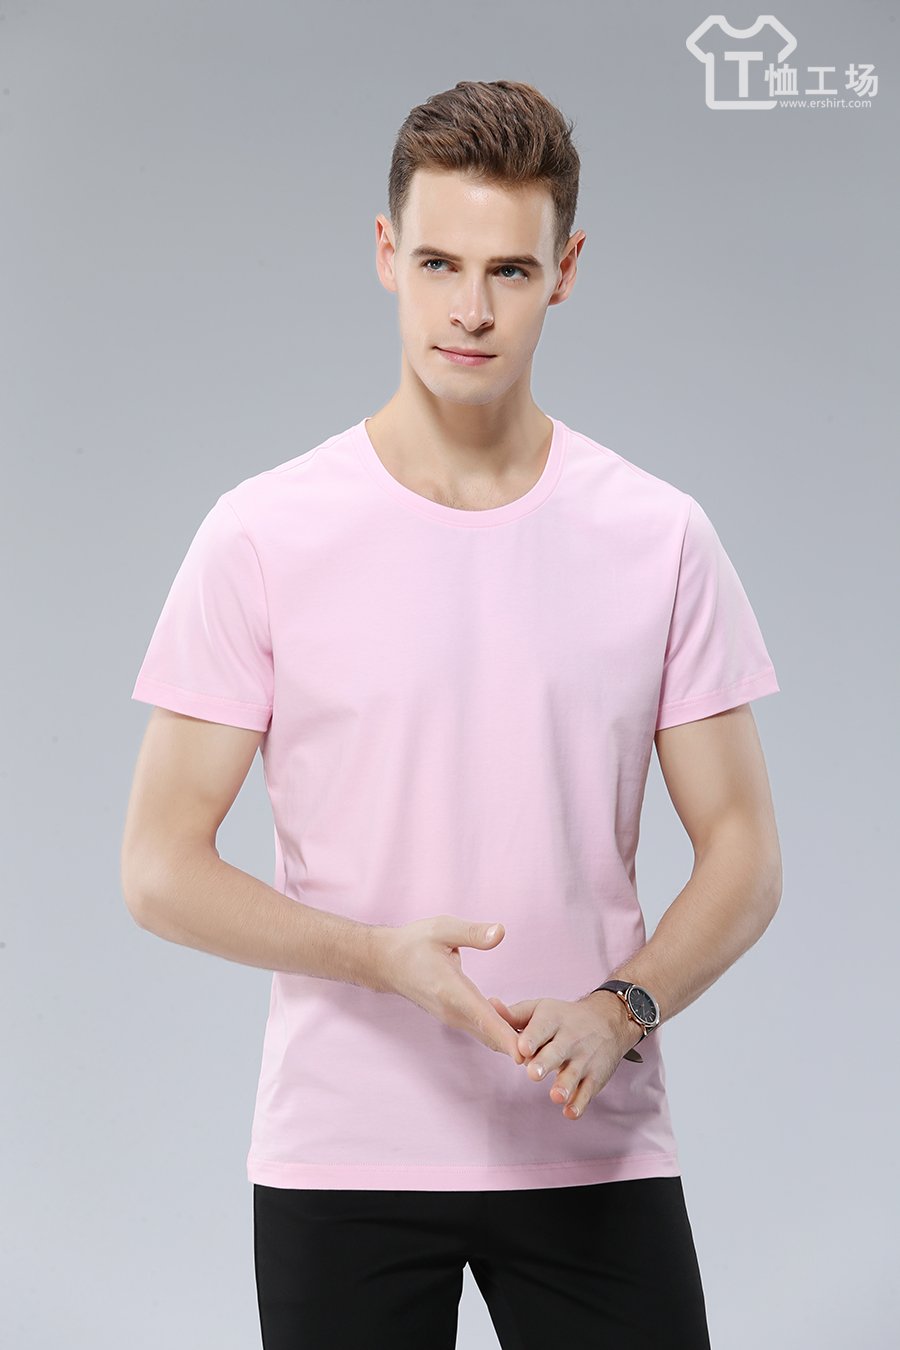 粉色t恤6